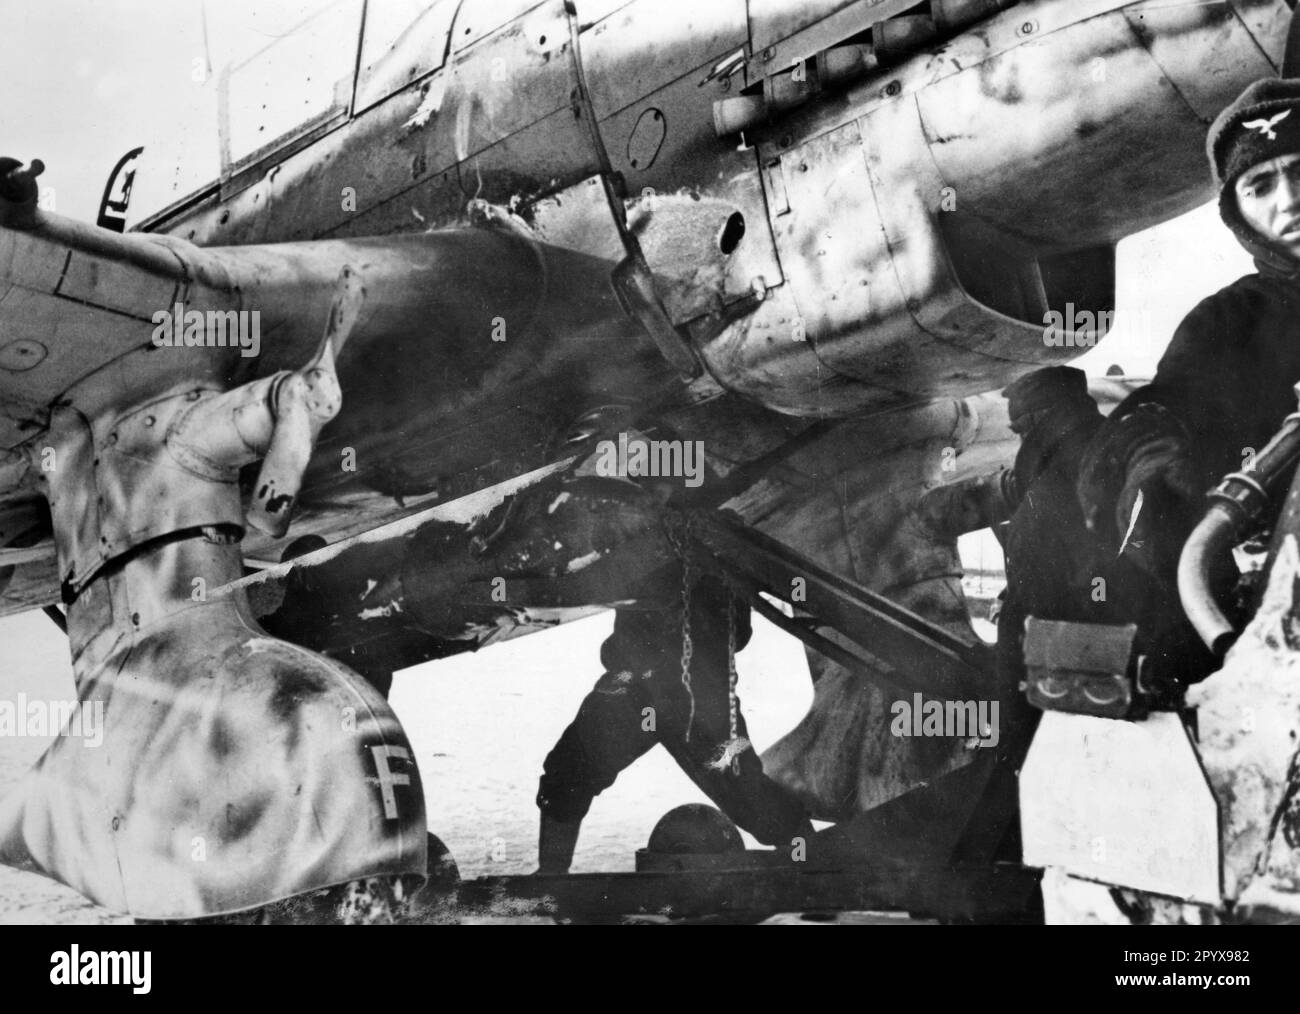 L'equipaggio di terra suona una bomba pesante sotto la fusoliera di un Junkers Ju 87. L'immagine mostra le eliche della cosiddetta tromba di Gerico, che produceva il suono urlante quando l'aereo cadde. Foto: Roesch. [traduzione automatica] Foto Stock